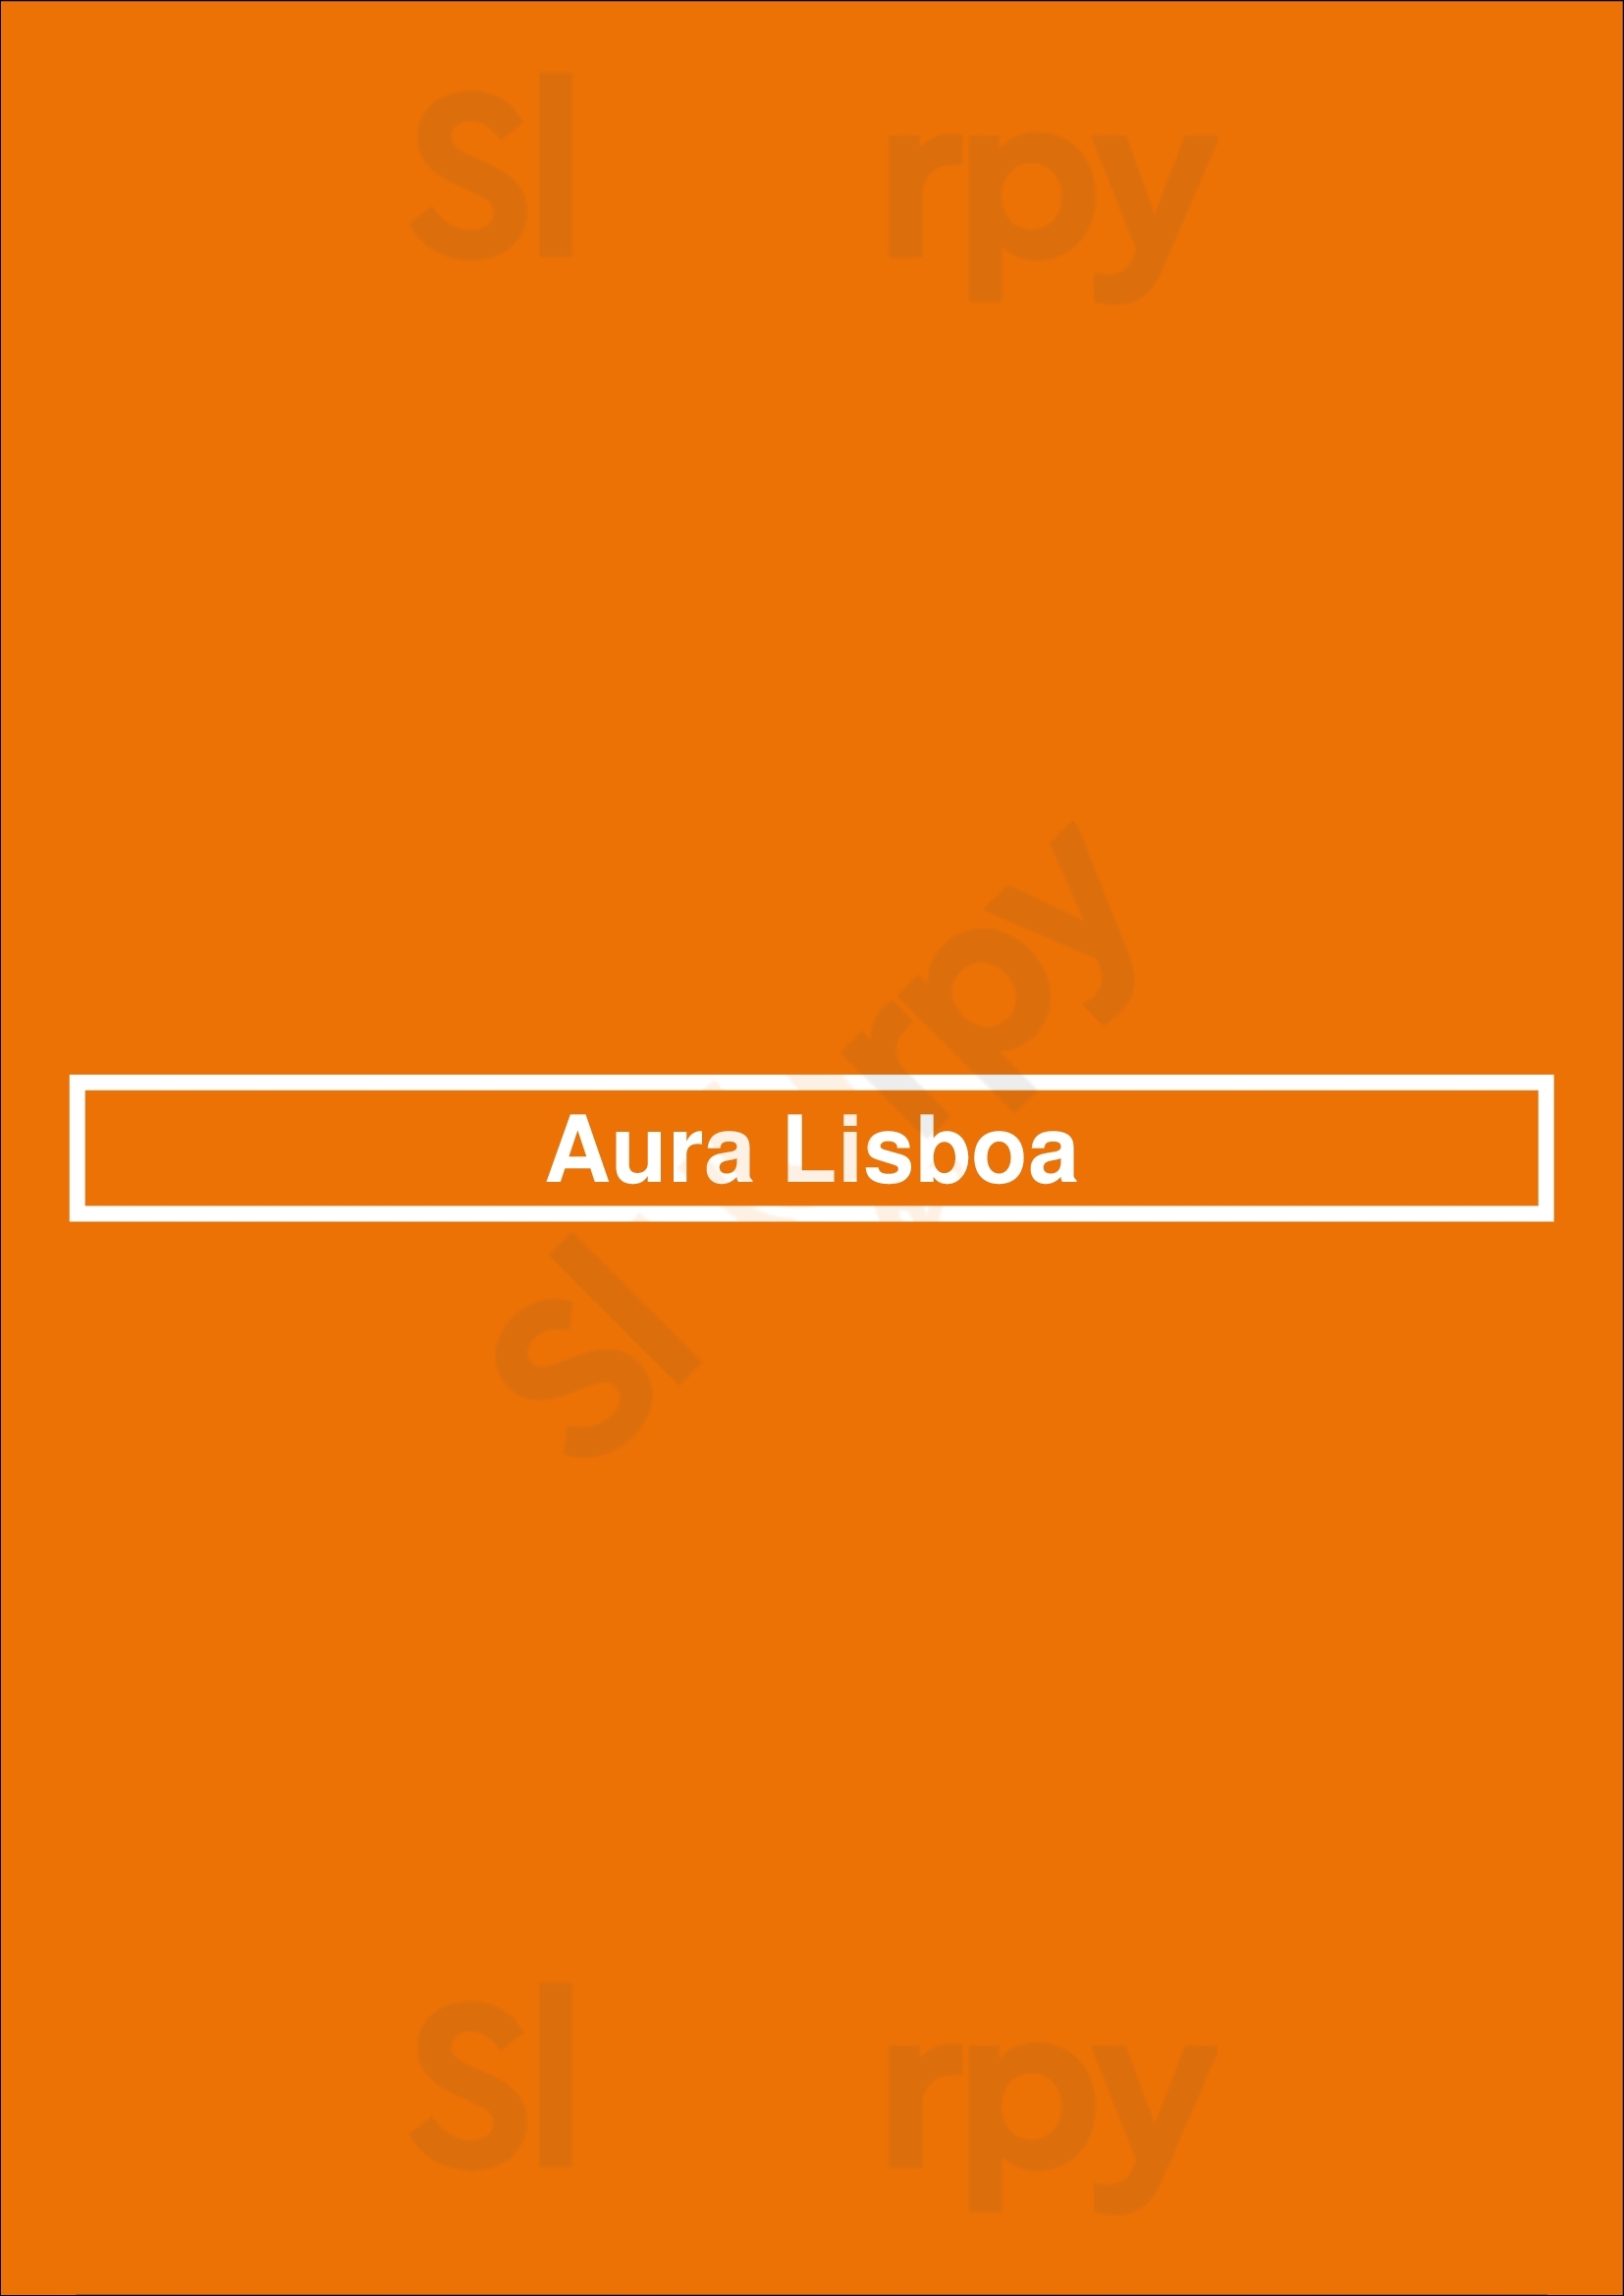 Aura Lisboa Lisboa Menu - 1